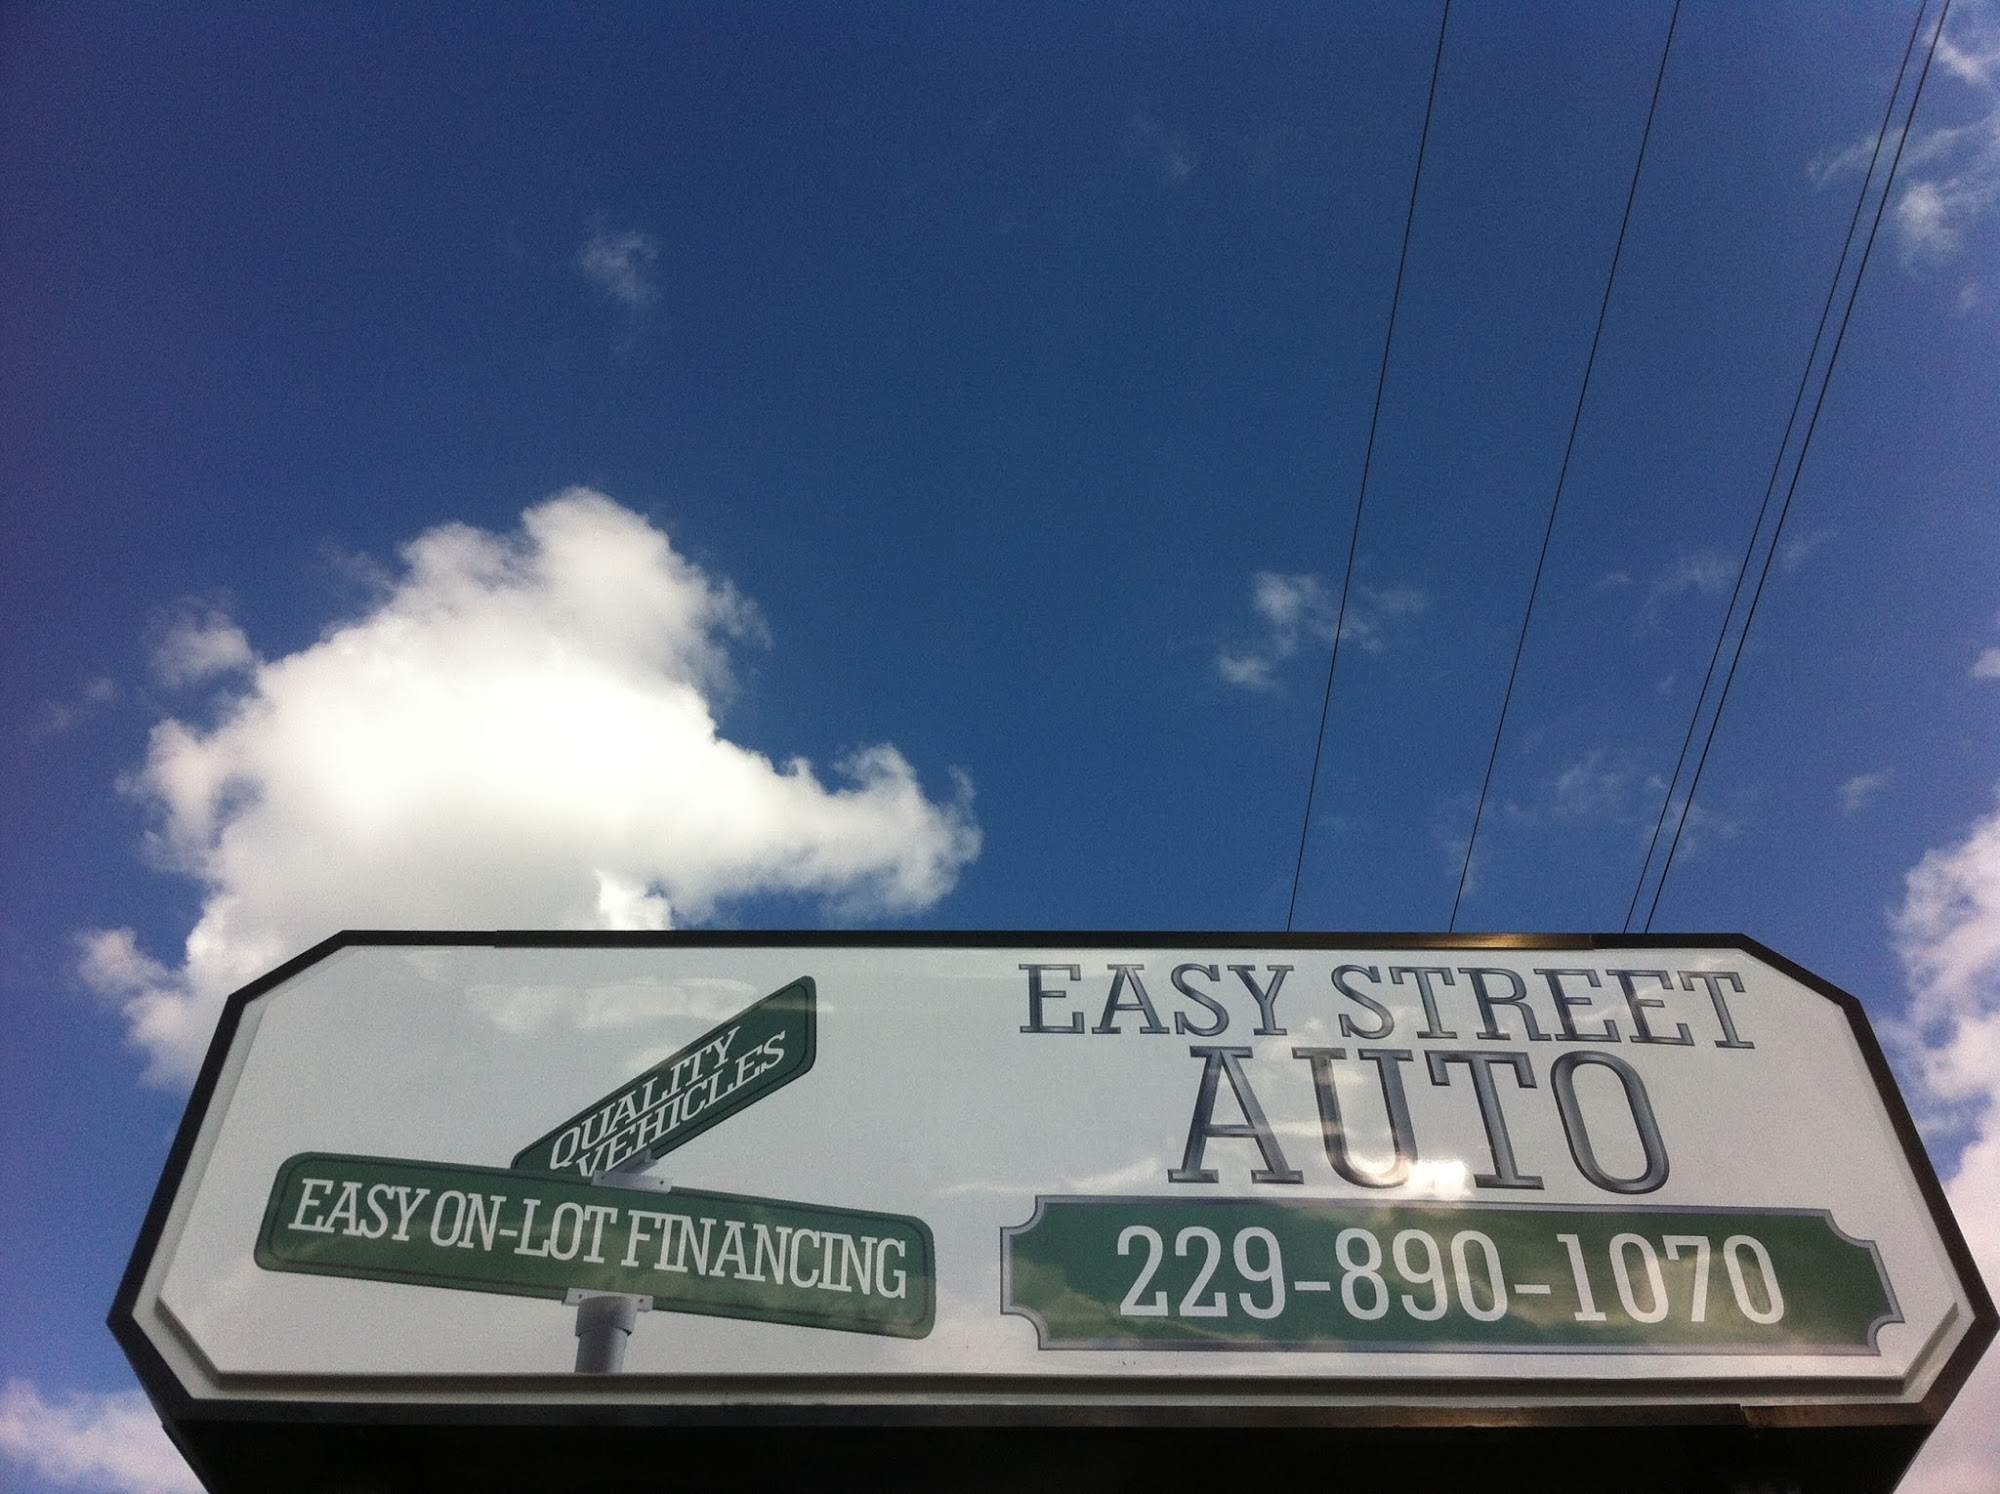 Easy Street Auto